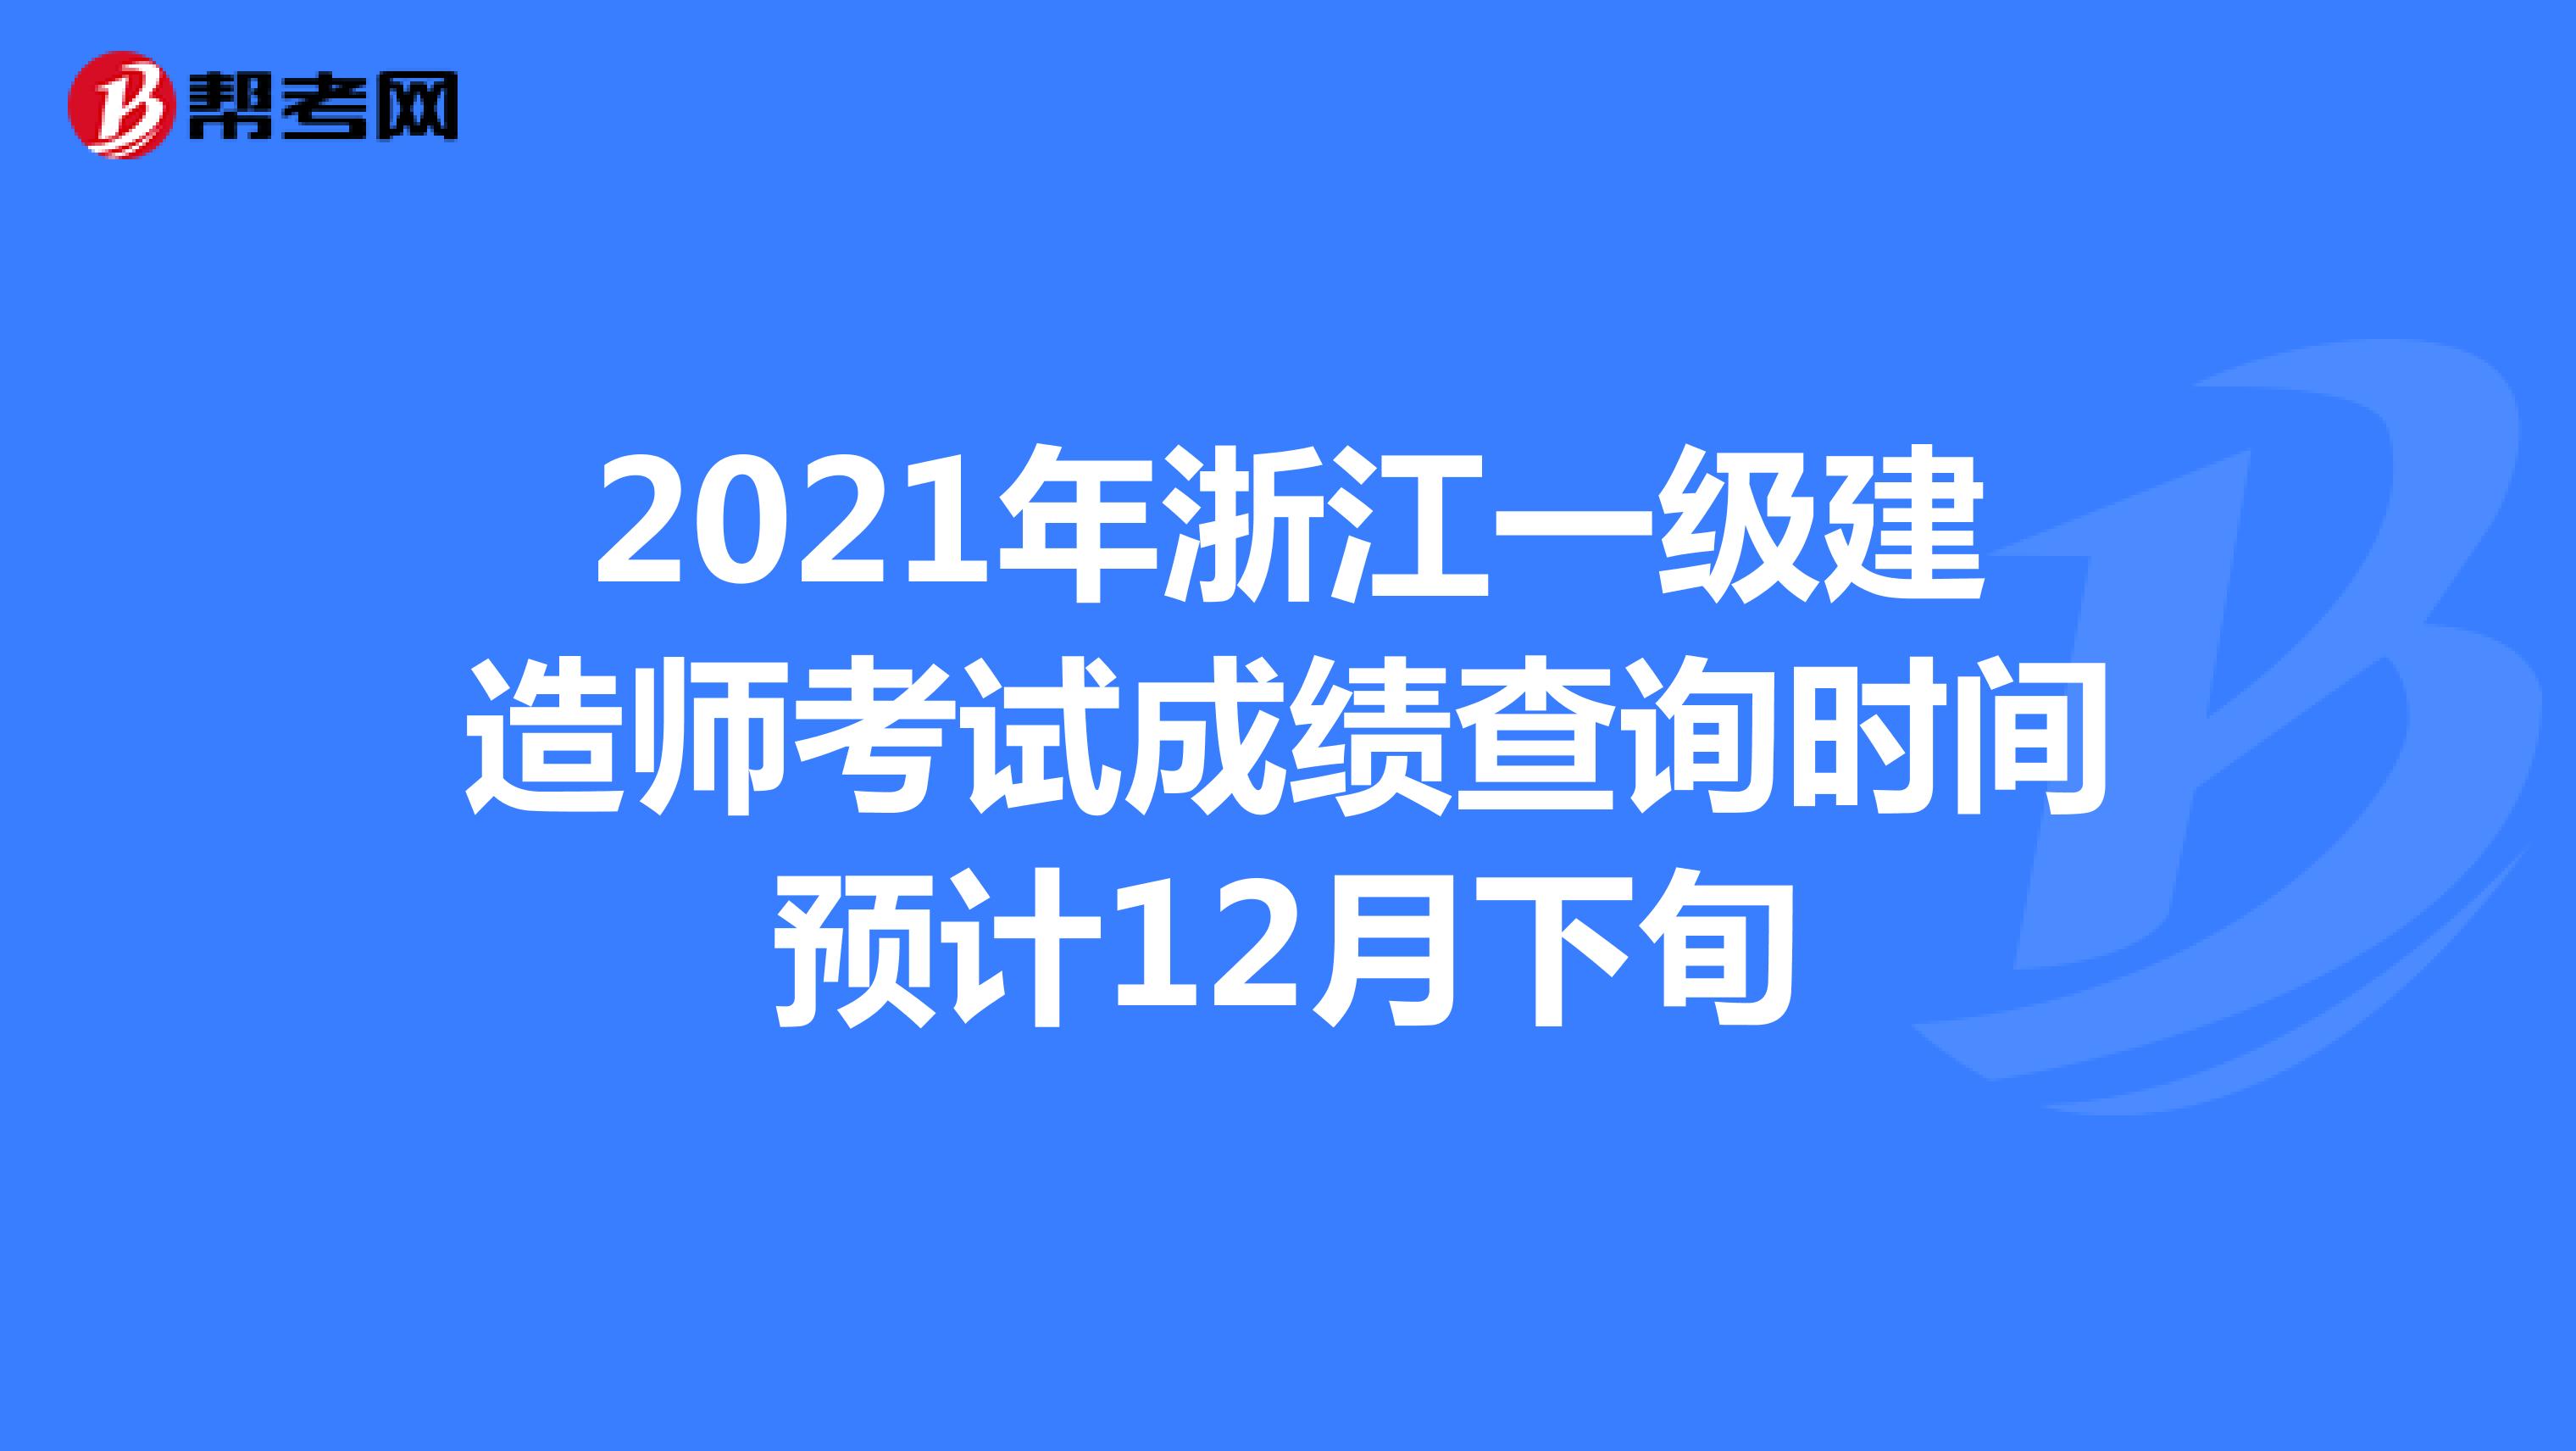 2021年浙江一级建造师考试成绩查询时间预计12月下旬